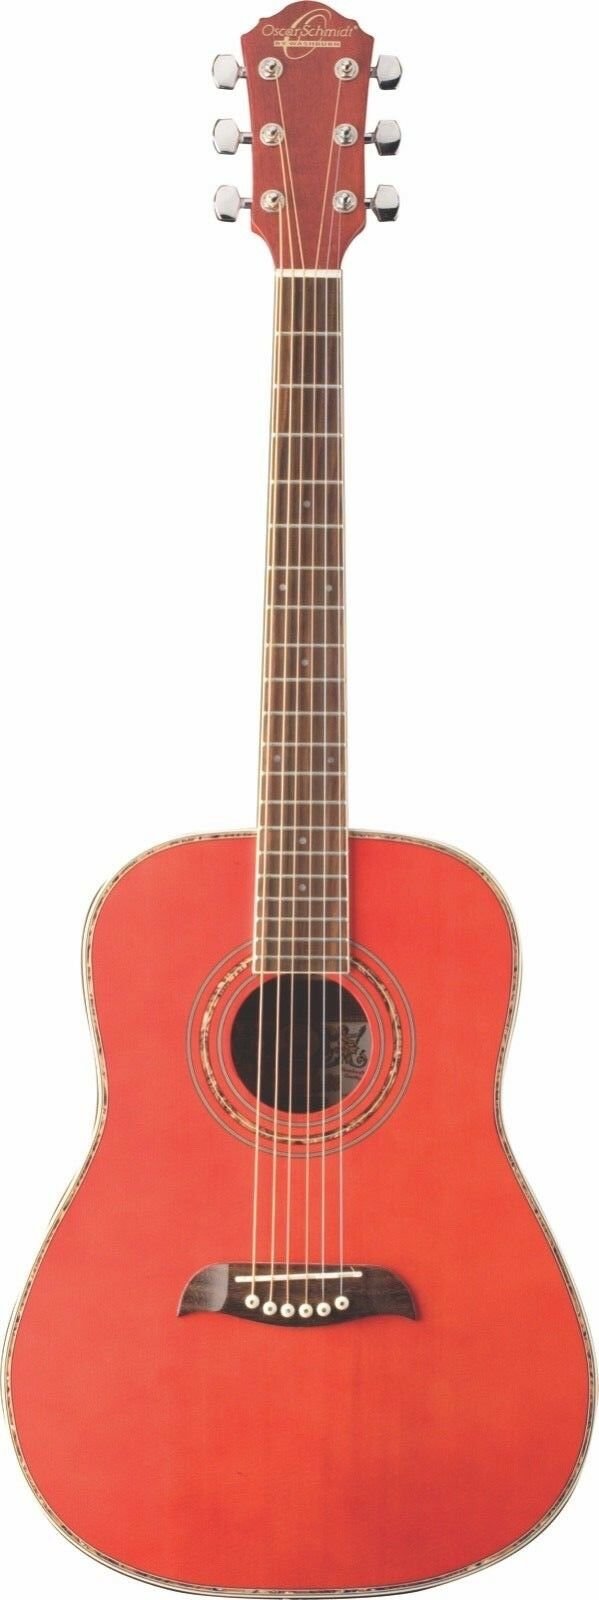 Oscar Schmidt OG1 3/4-Size Acoustic Guitar Trans Red - OG1TR